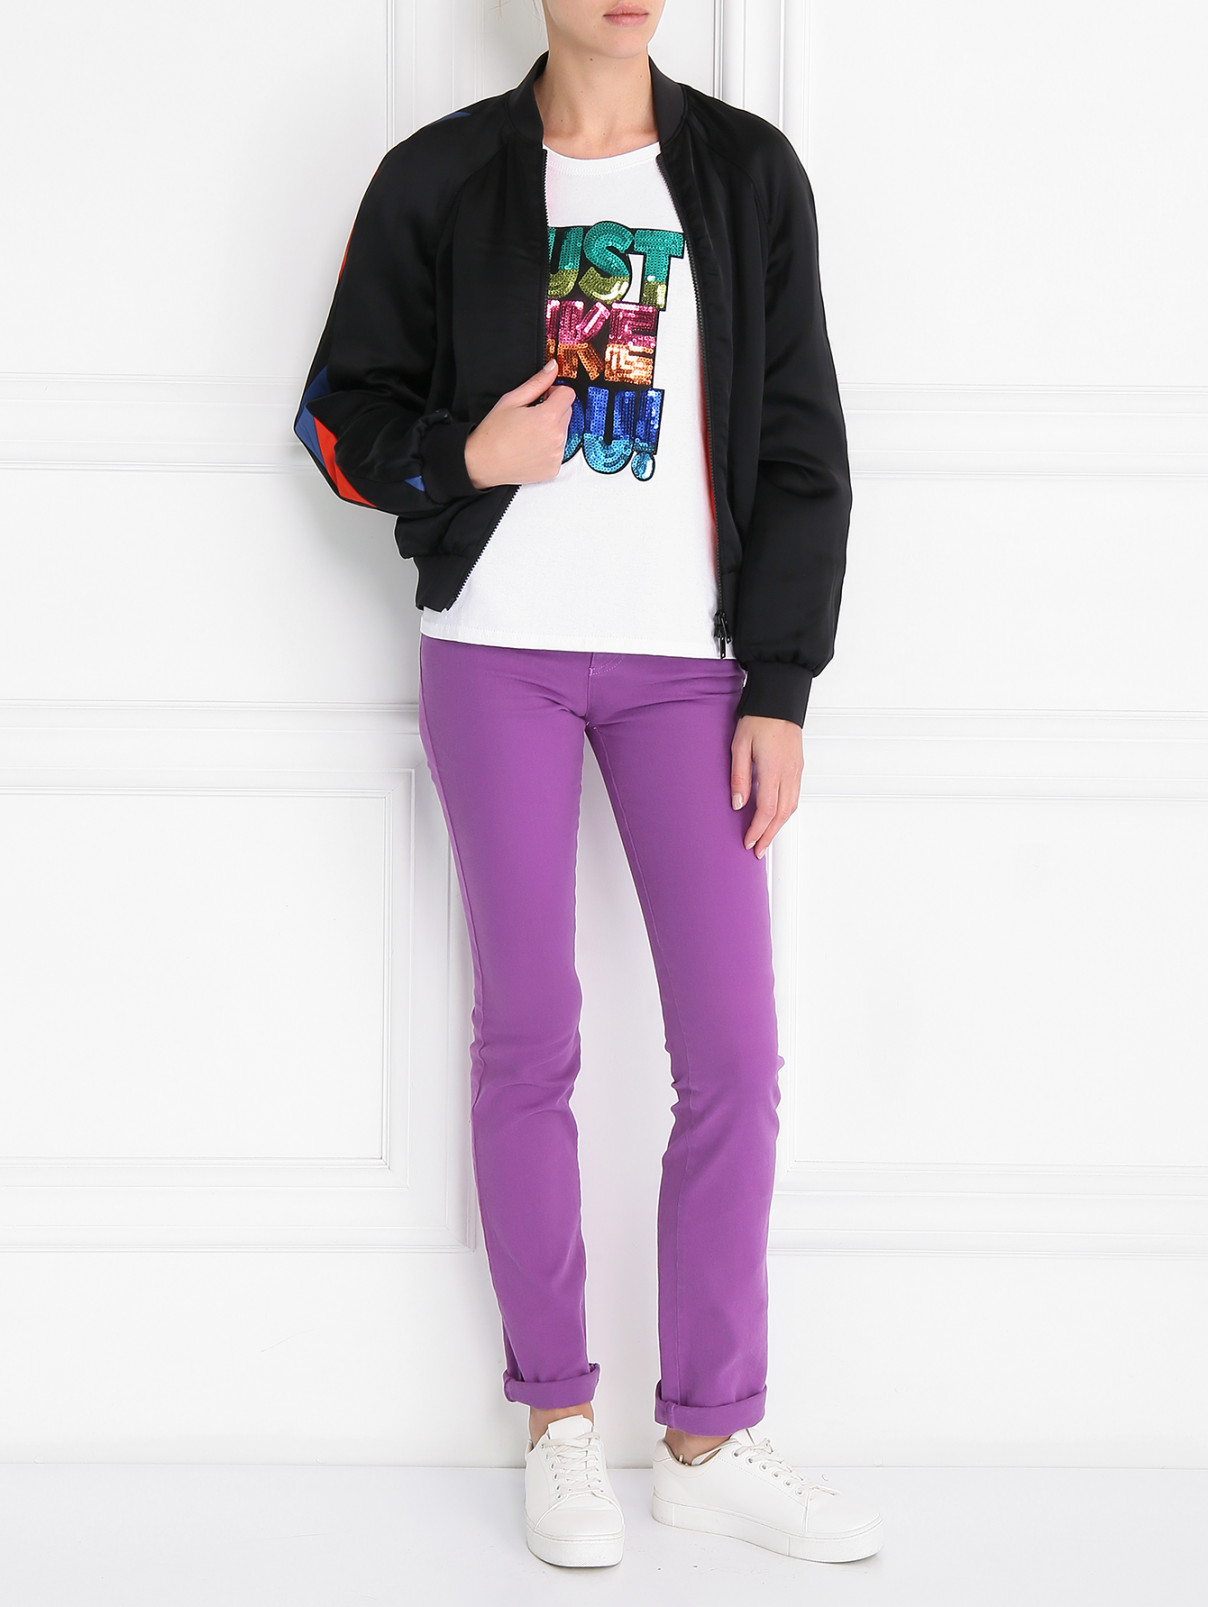 Узкие джинсы из хлопка Iceberg  –  Модель Общий вид  – Цвет:  Фиолетовый